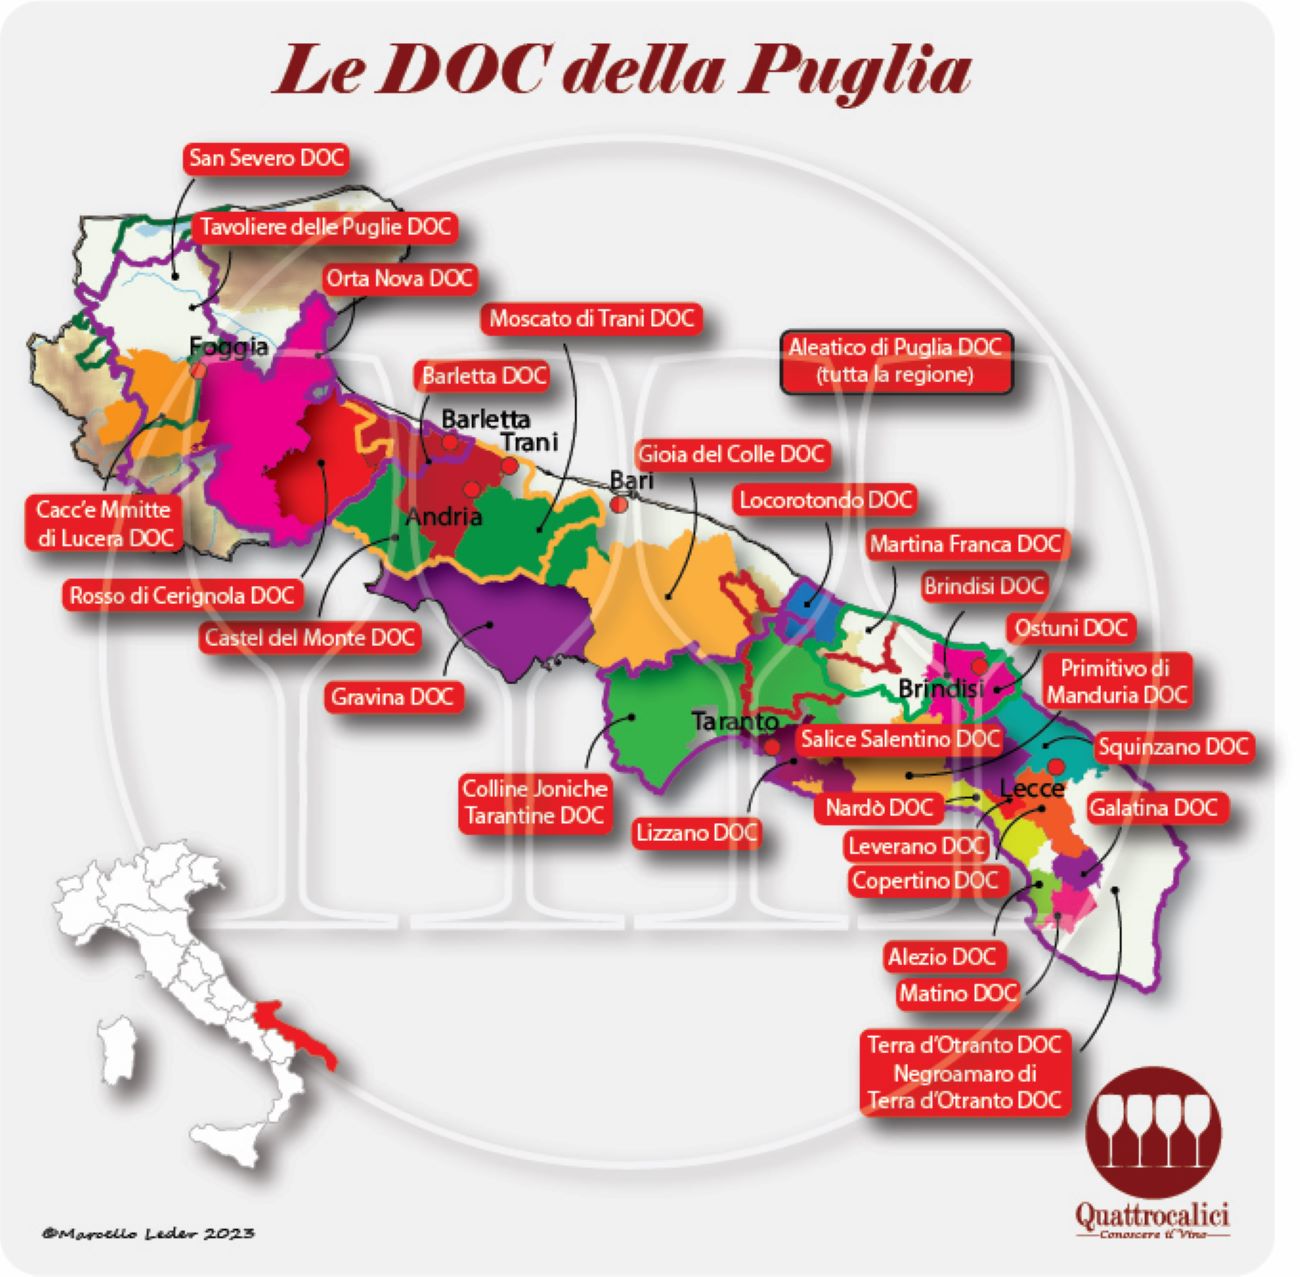 Le DOC della Puglia